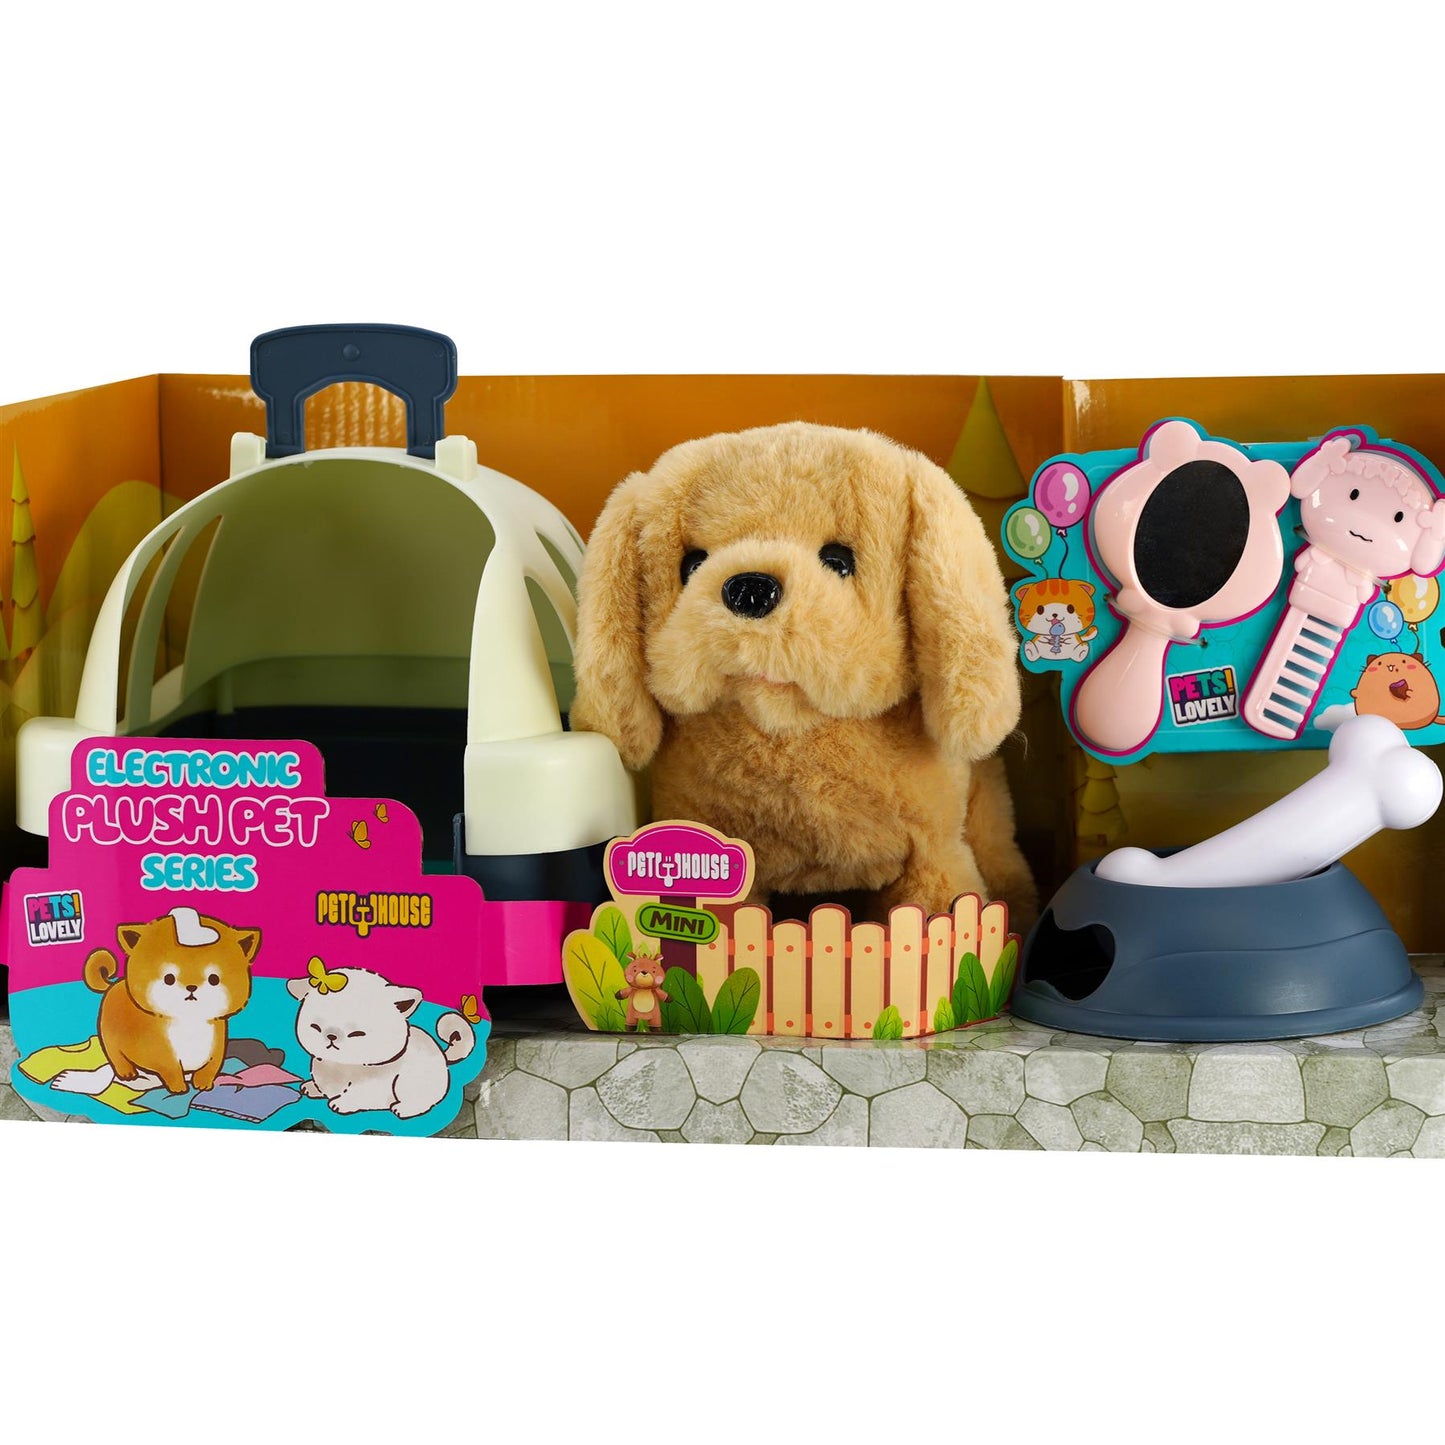 Electronic Plush Dog Carrier Set by The Magic Toy Shop - UKBuyZone